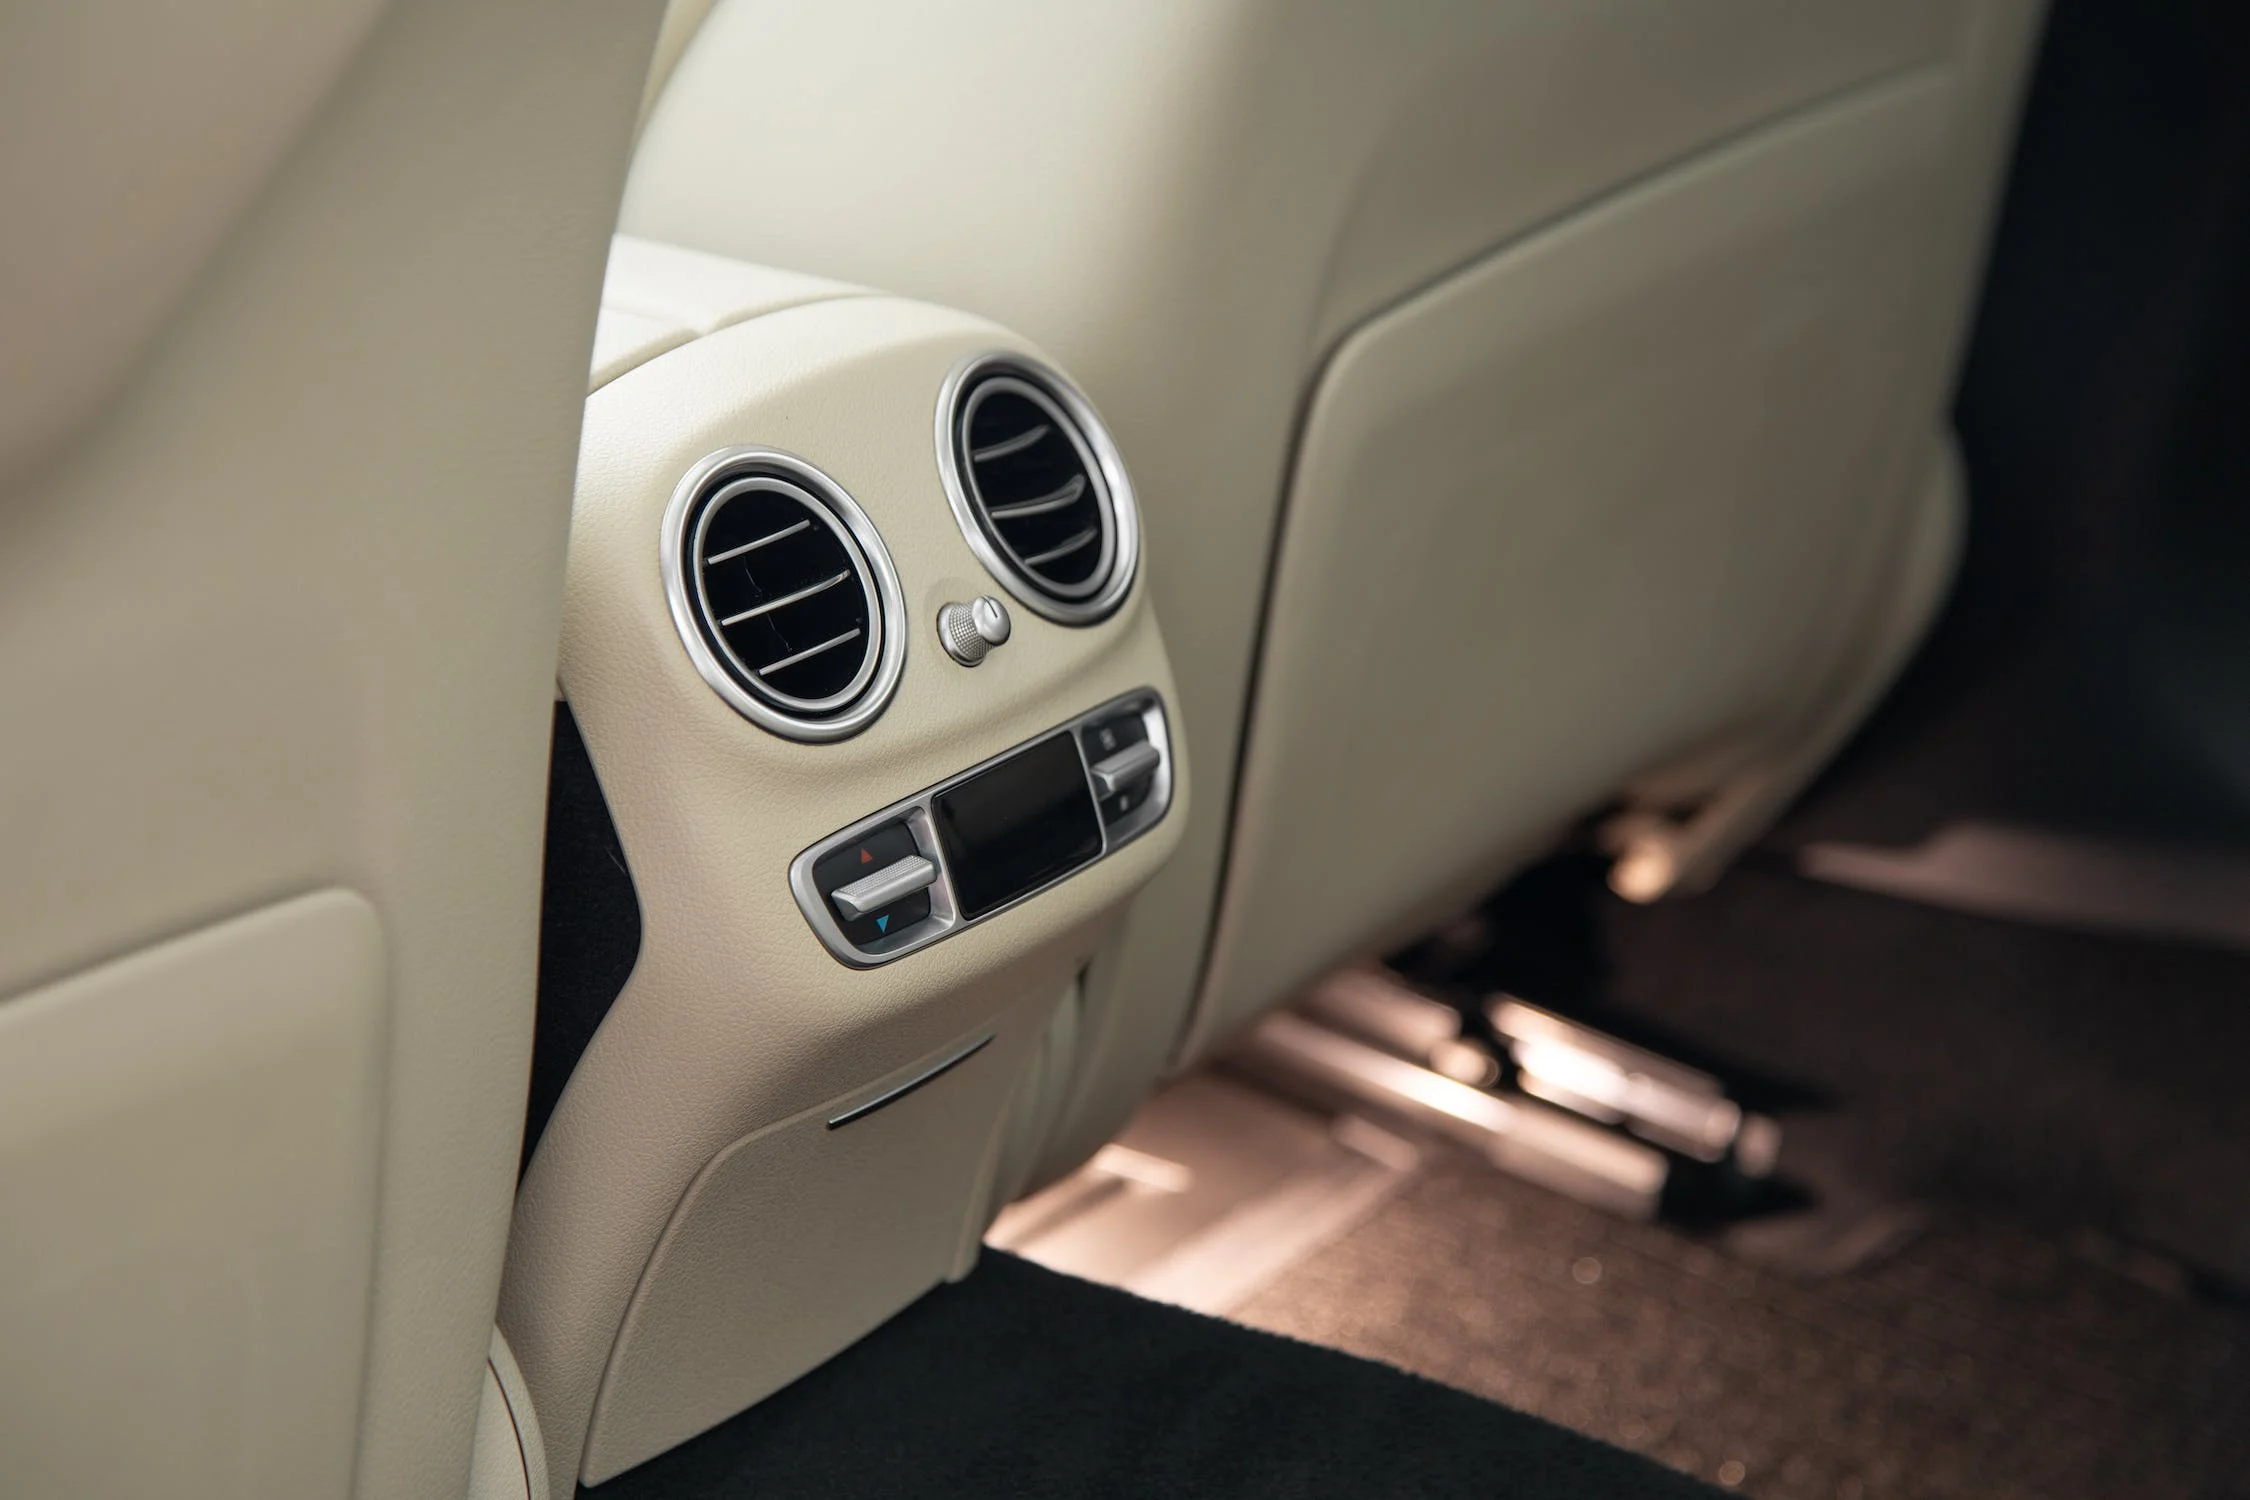 výstup klimatizace pro pasažéry na zadních sedadlech luxusního vozu s interiérem v bílé kůži